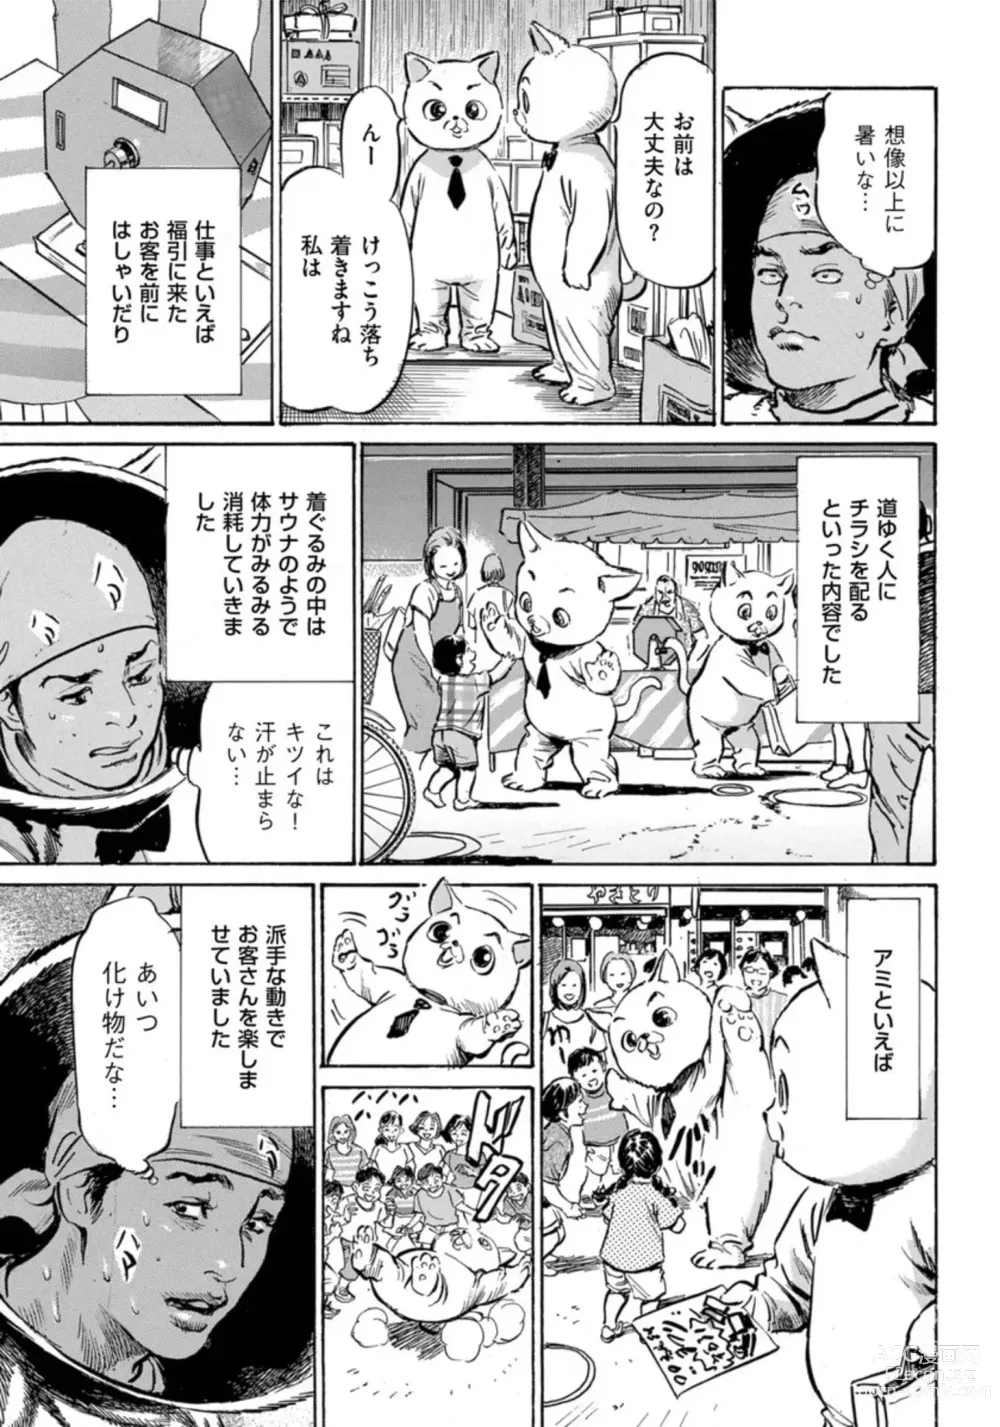 Page 6 of manga Zutto Himitsu ni Shiteita Ano Koto Zenbu Oshiemasu 14 episodes